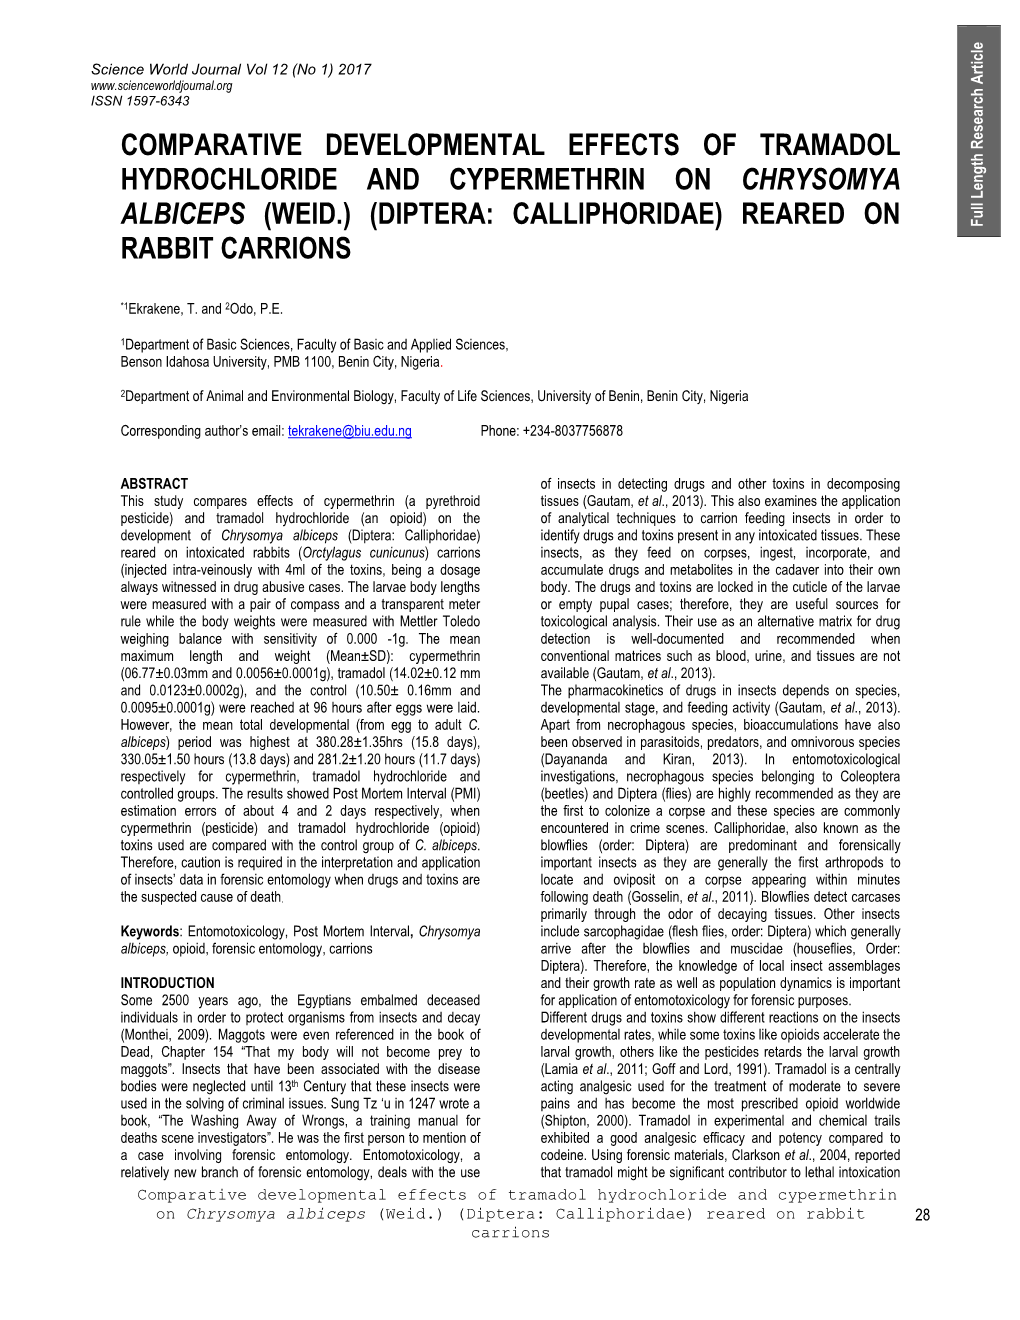 Comparative Developmental Effects of Tramadol Hydrochloride and Cypermethrin on Chrysomya